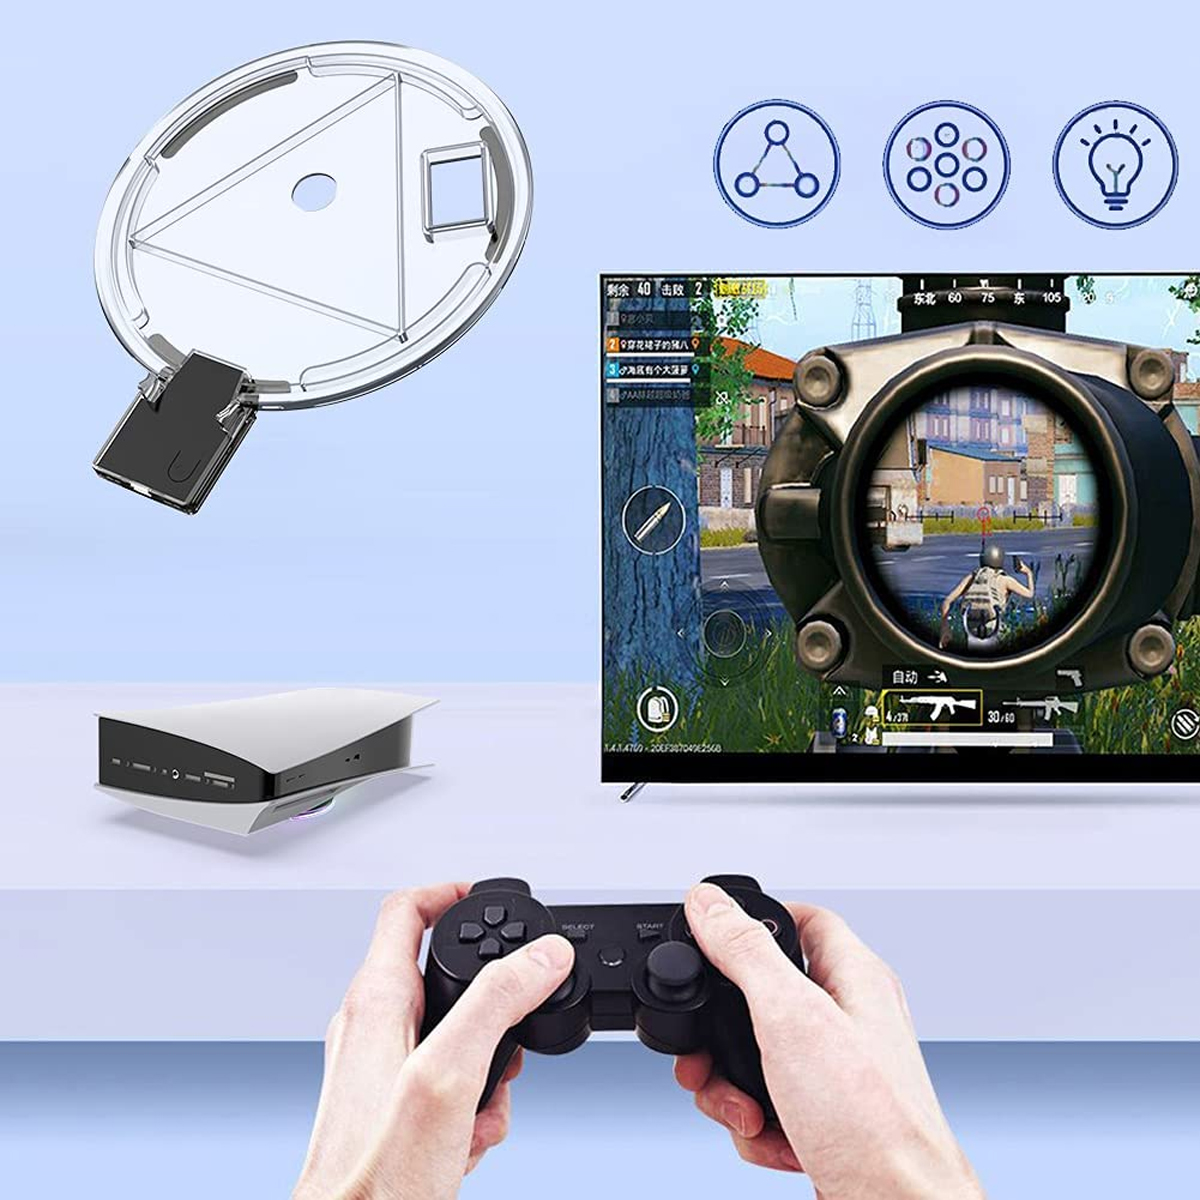 PlayStation Konsolenzubehör, 5-Controller, RESPIEL Beleuchteter schwarz RGB-Ladeschale Sockel, Konsolenständer